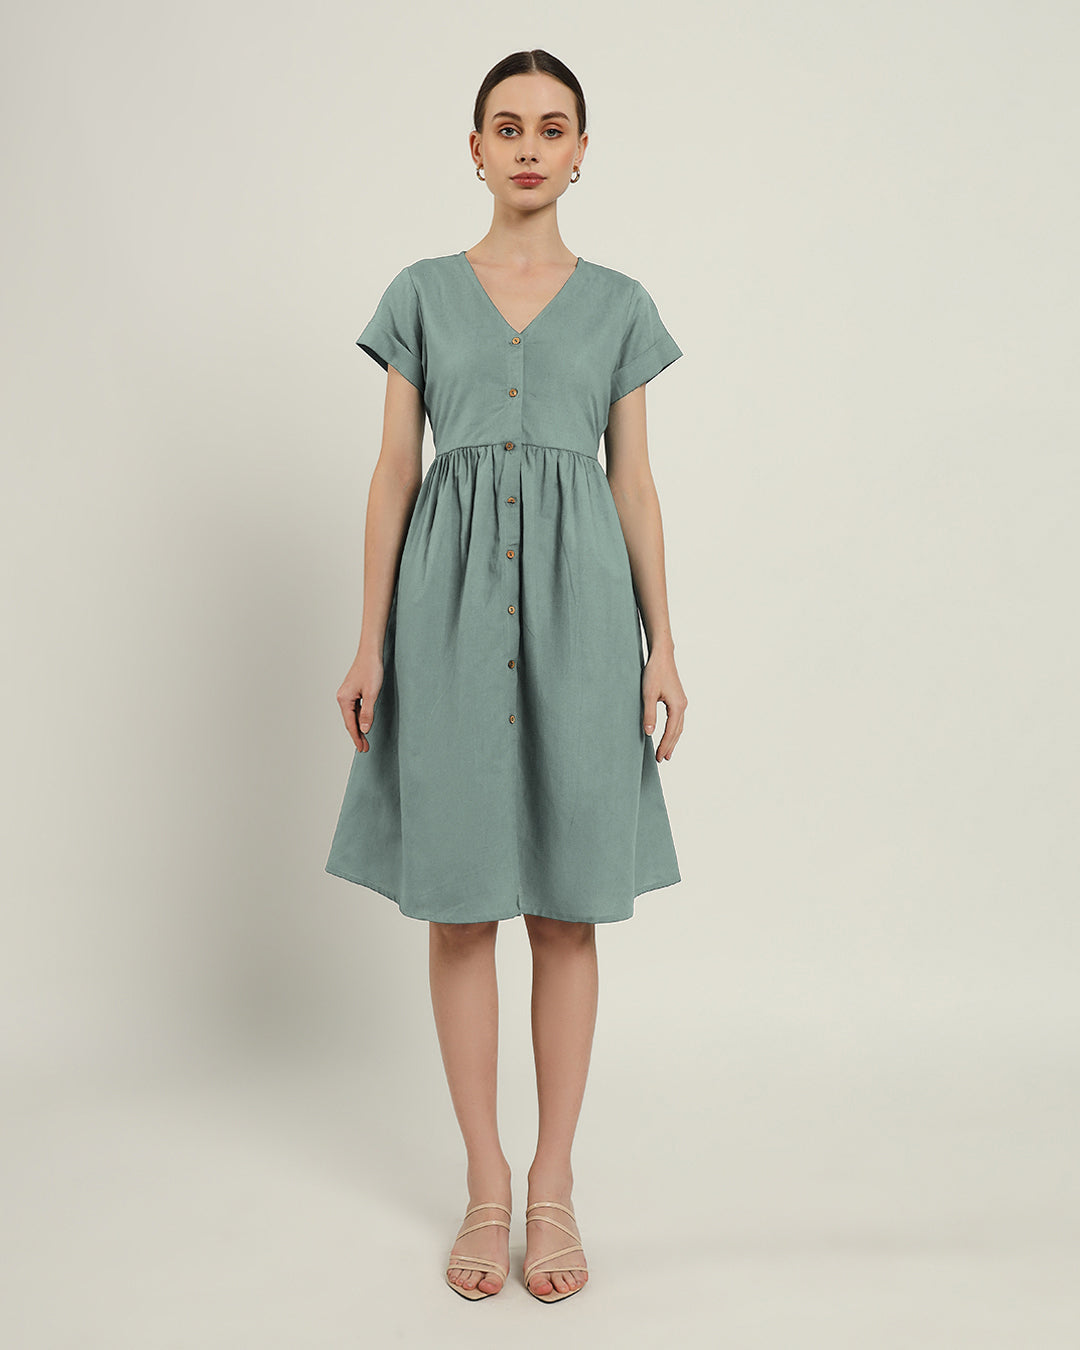 The Valence Daisy Carolina Linen Dress